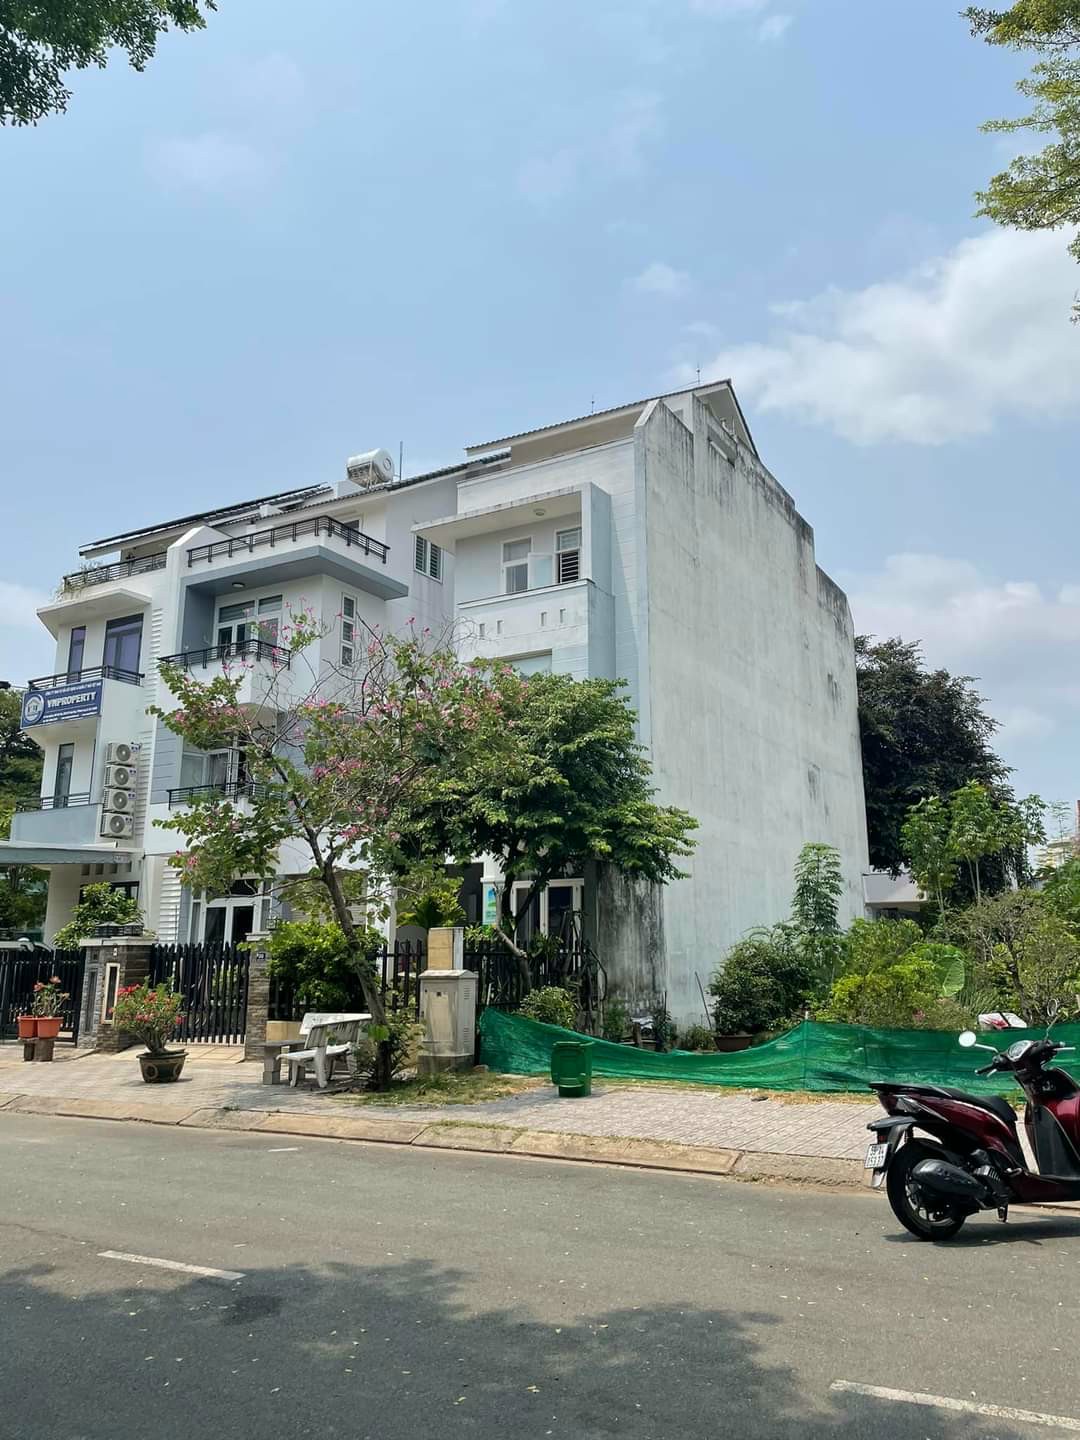 Bán nhà đất 7x19 đường 12m KDC Gia Hoà, P. Phước Long B Q.9. Giá 84tr/m2